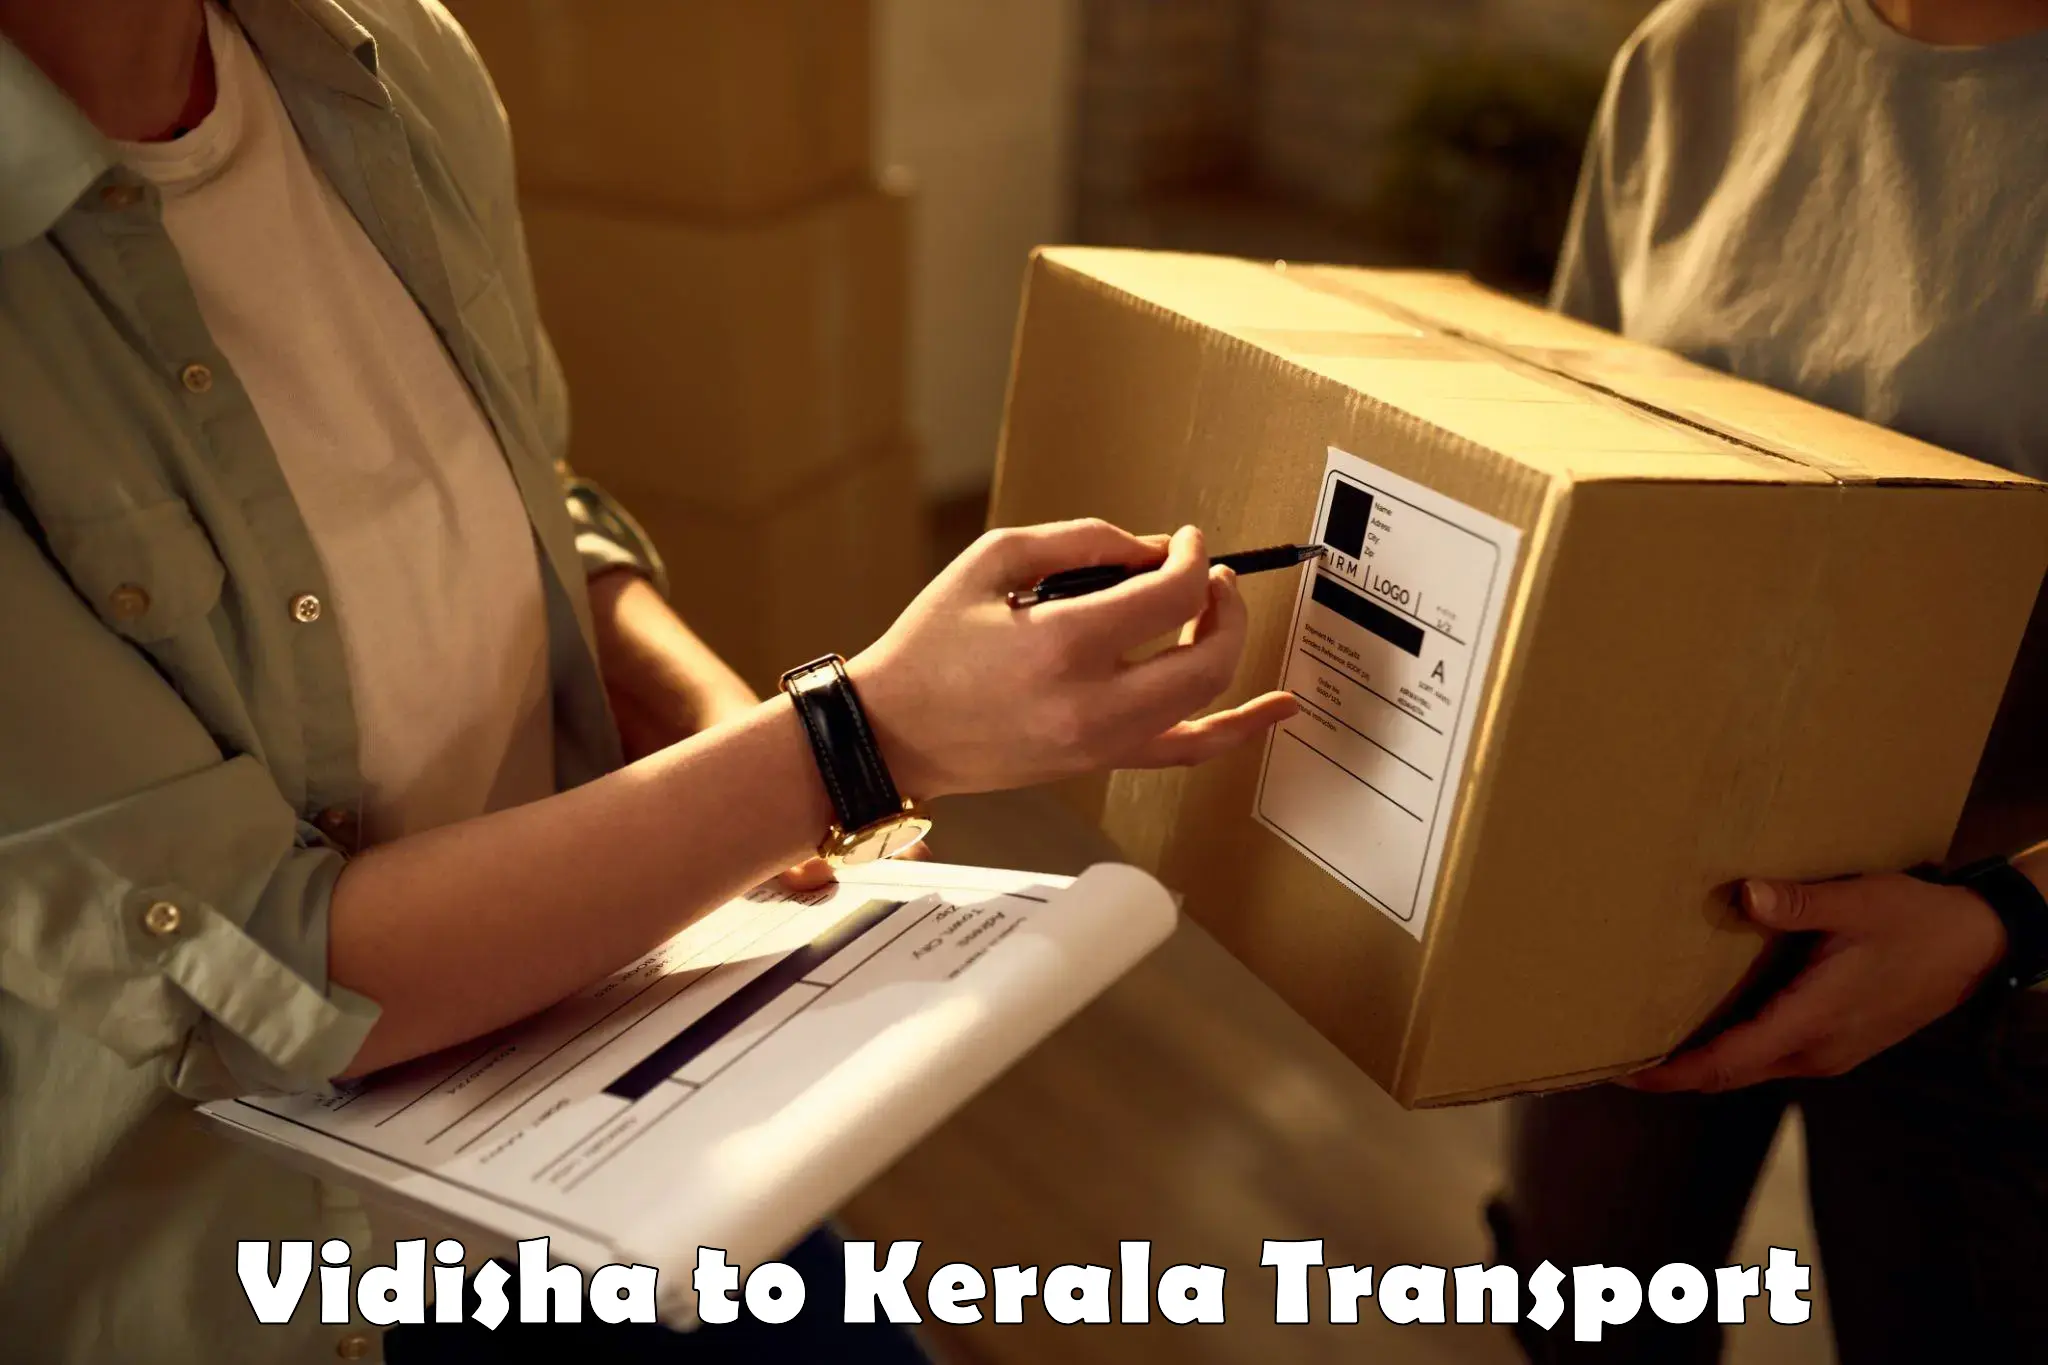 Furniture transport service Vidisha to Koothattukulam